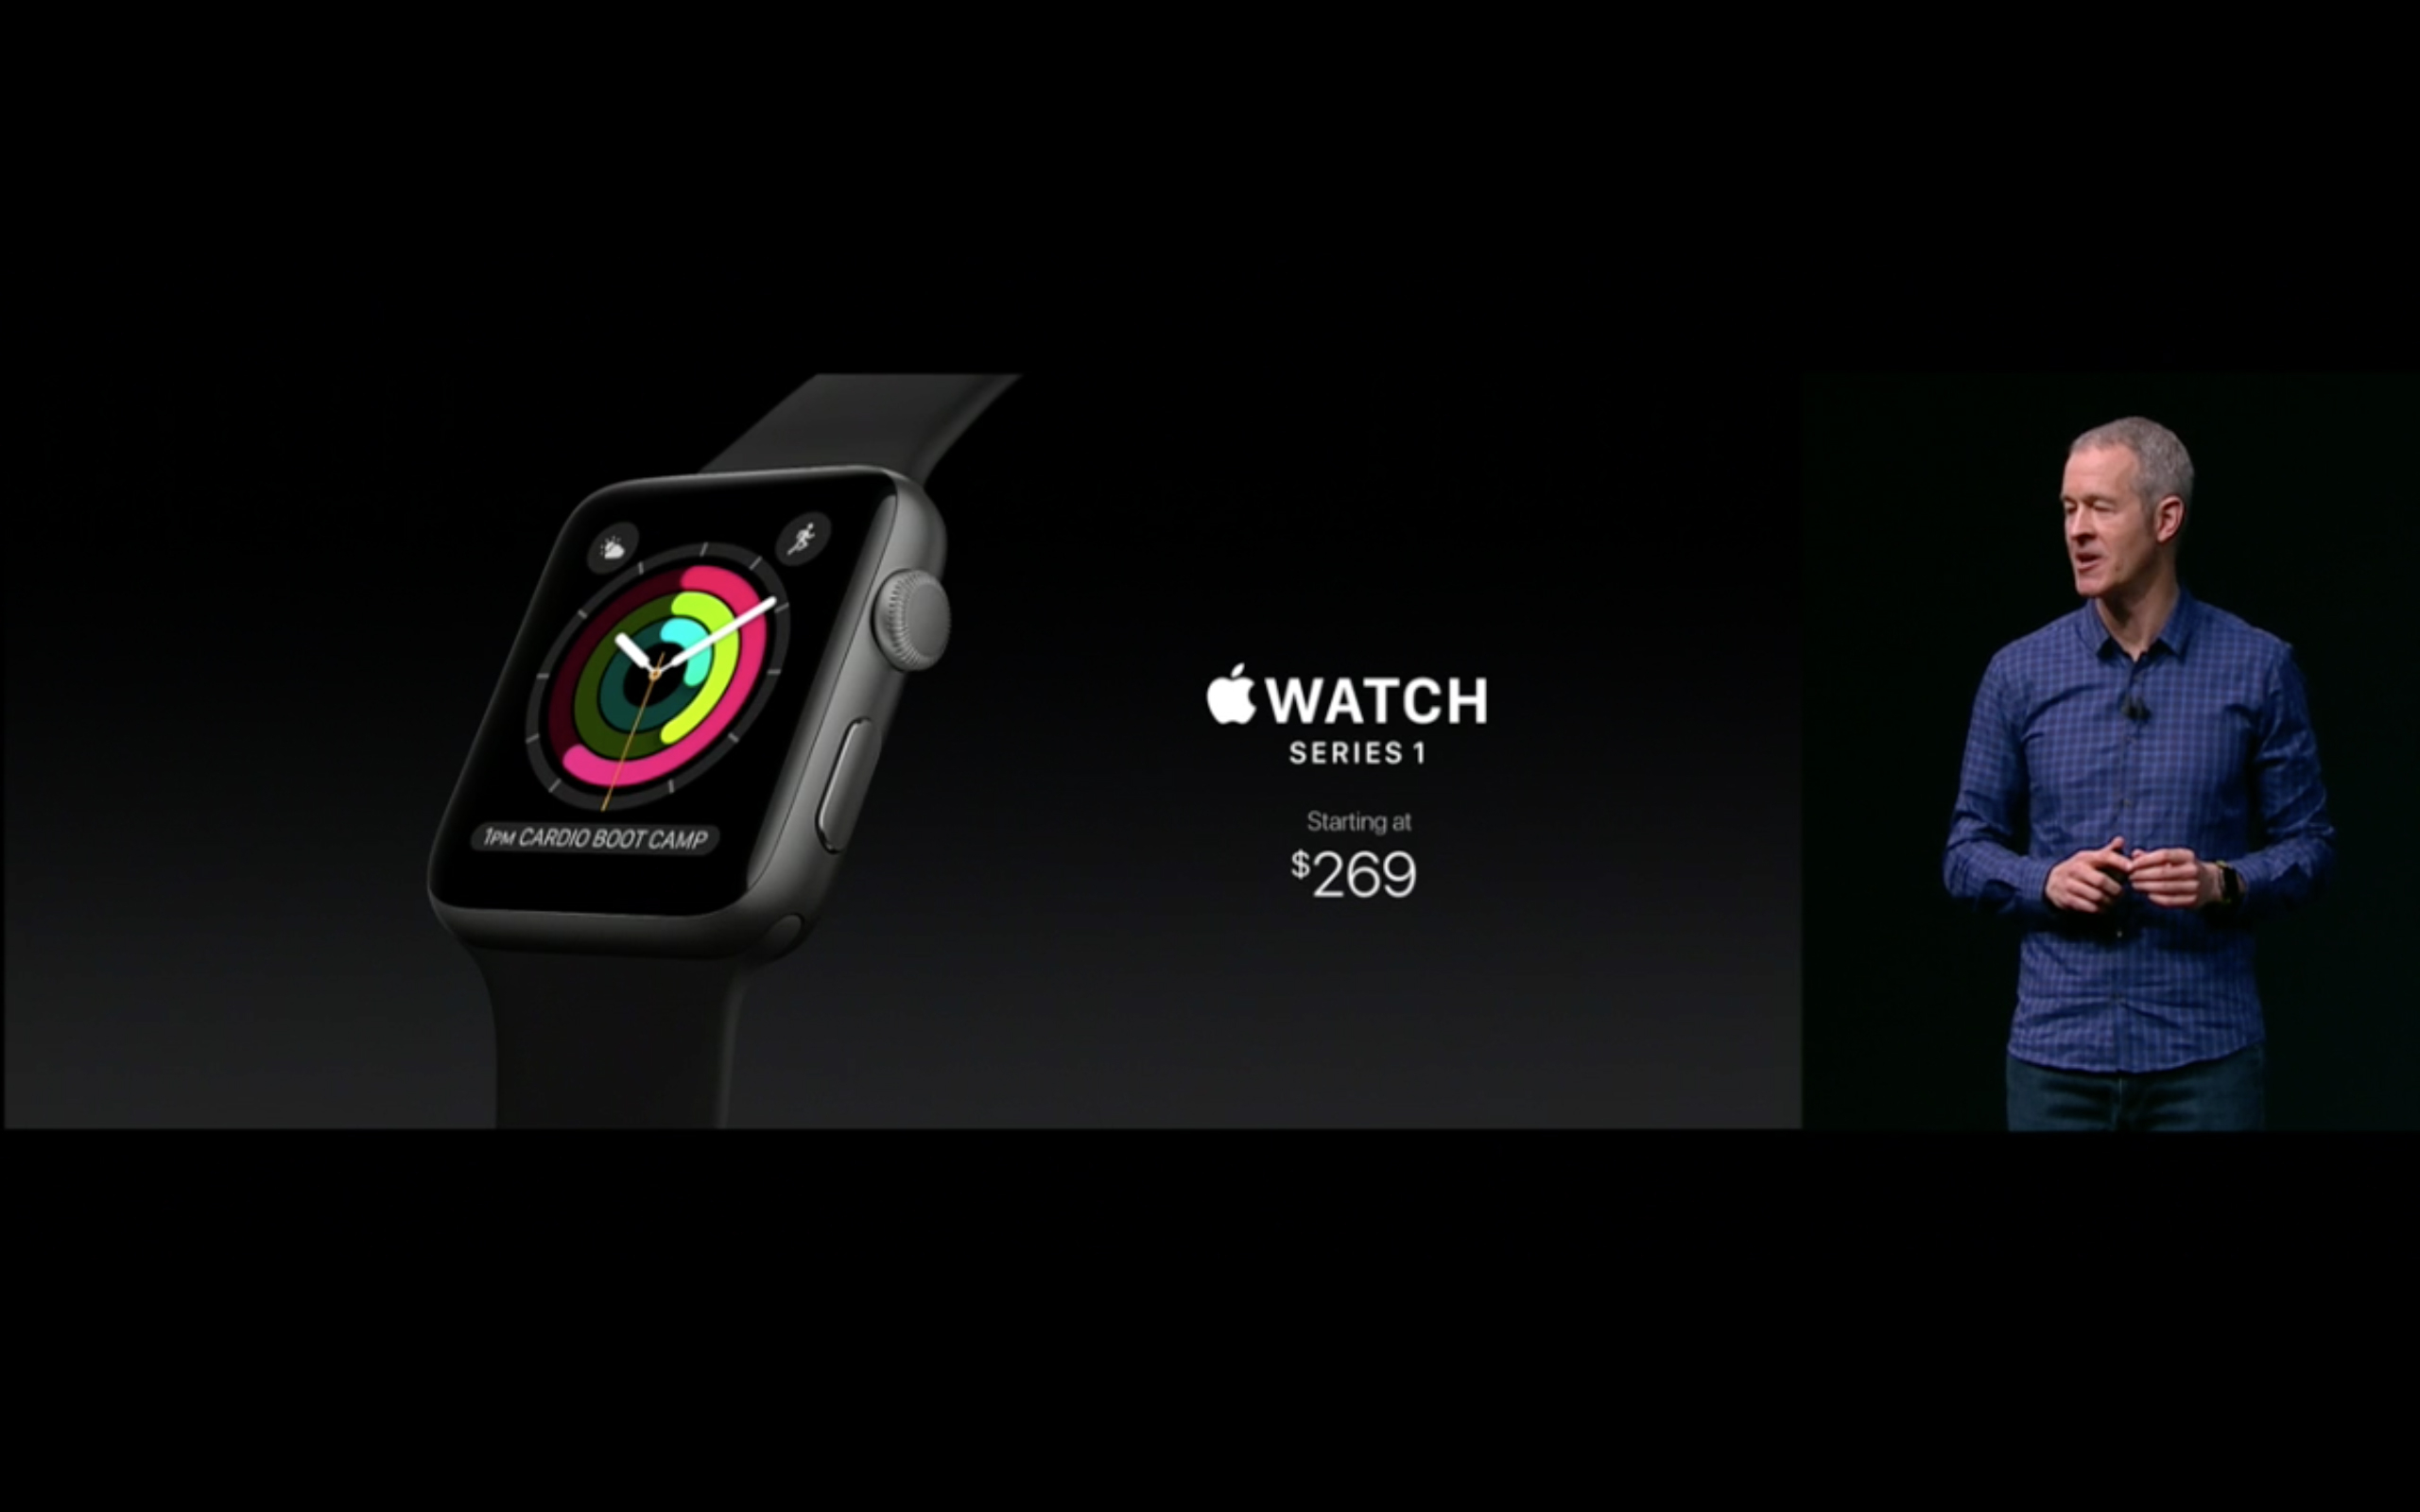 ทั้งลดทั้งแรง!! Apple เปลี่ยนชื่อ Apple Watch รุ่นแรกพร้อมอัพเกรดซีพียูเป็นดูอัลคอร์!! อัพเดต watchOS 3 มาแน่ 13 กันยายนนี้